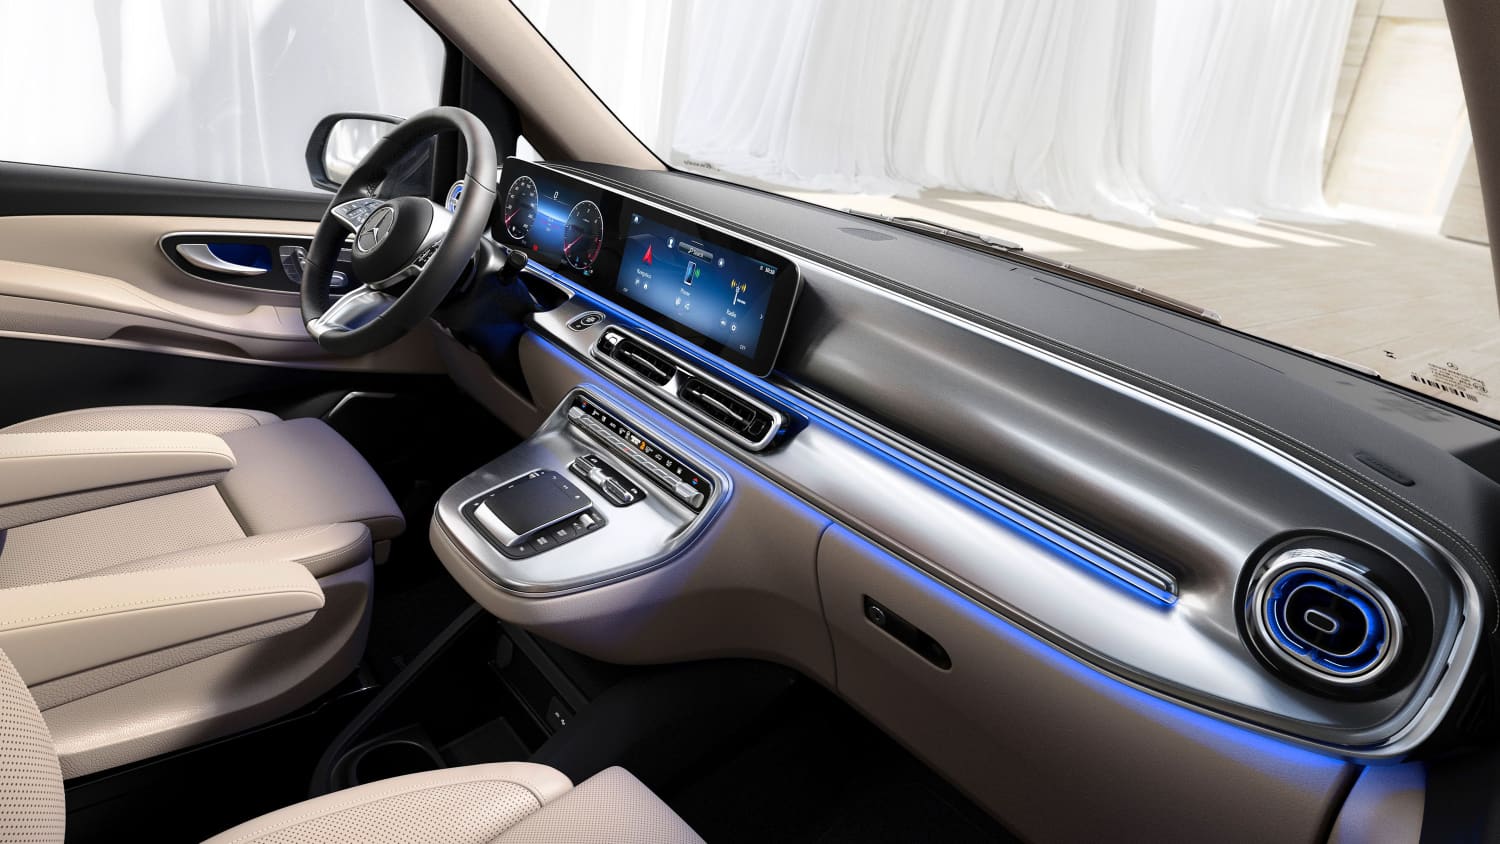 Mercedes V-Klasse Facelift: Neue Front, neues Cockpit, mehr Camper